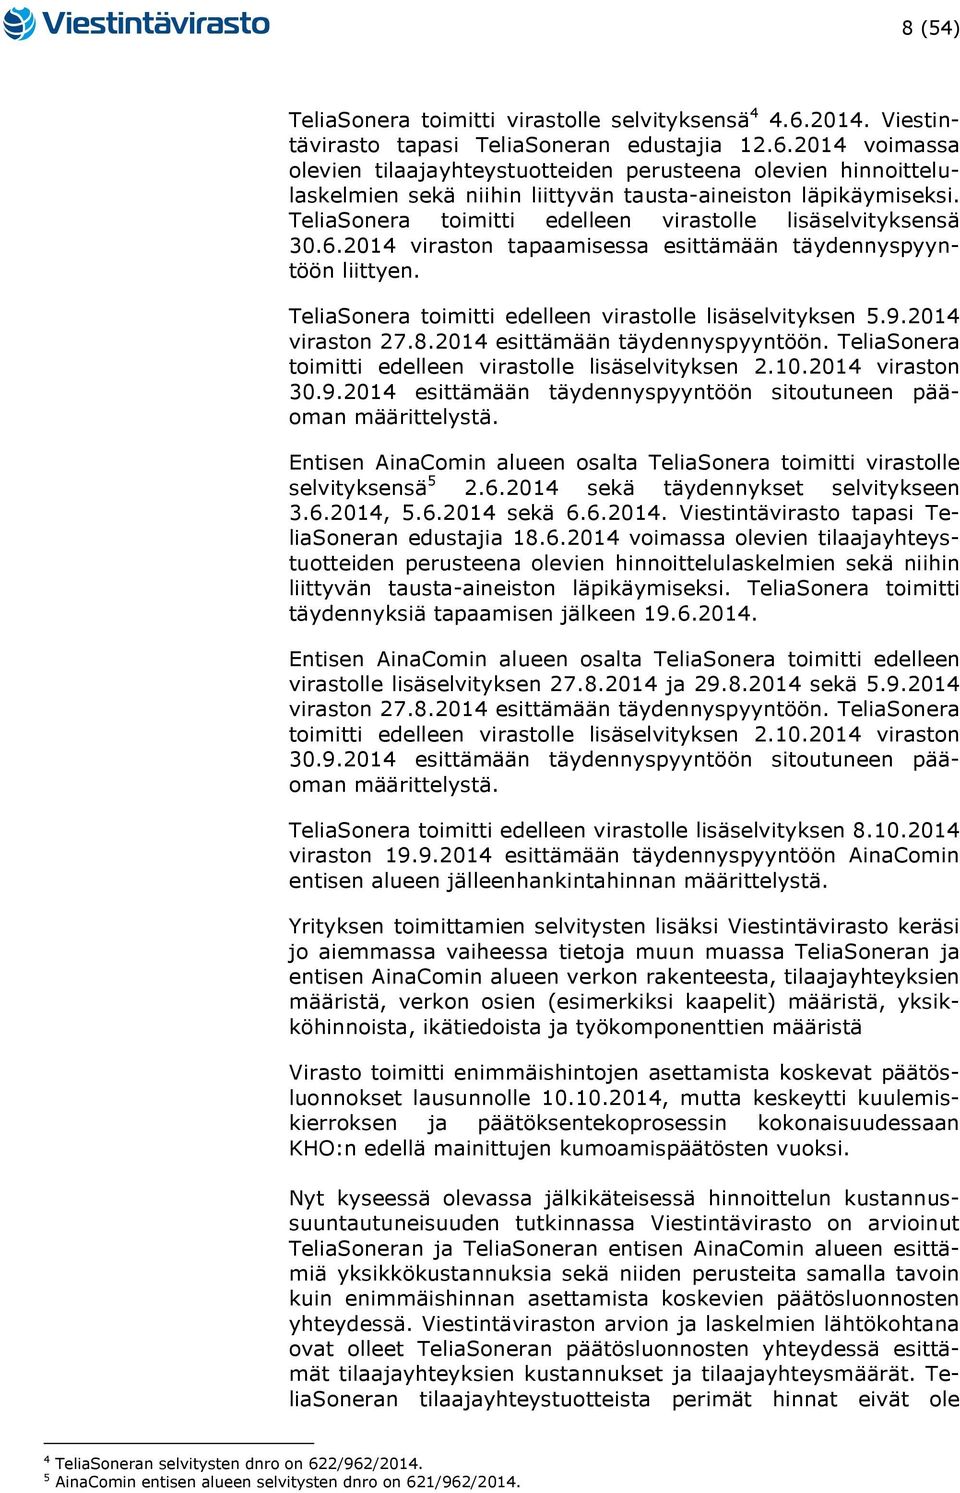 2014 viraston 27.8.2014 esittämään täydennyspyyntöön. TeliaSonera toimitti edelleen virastolle lisäselvityksen 2.10.2014 viraston 30.9.